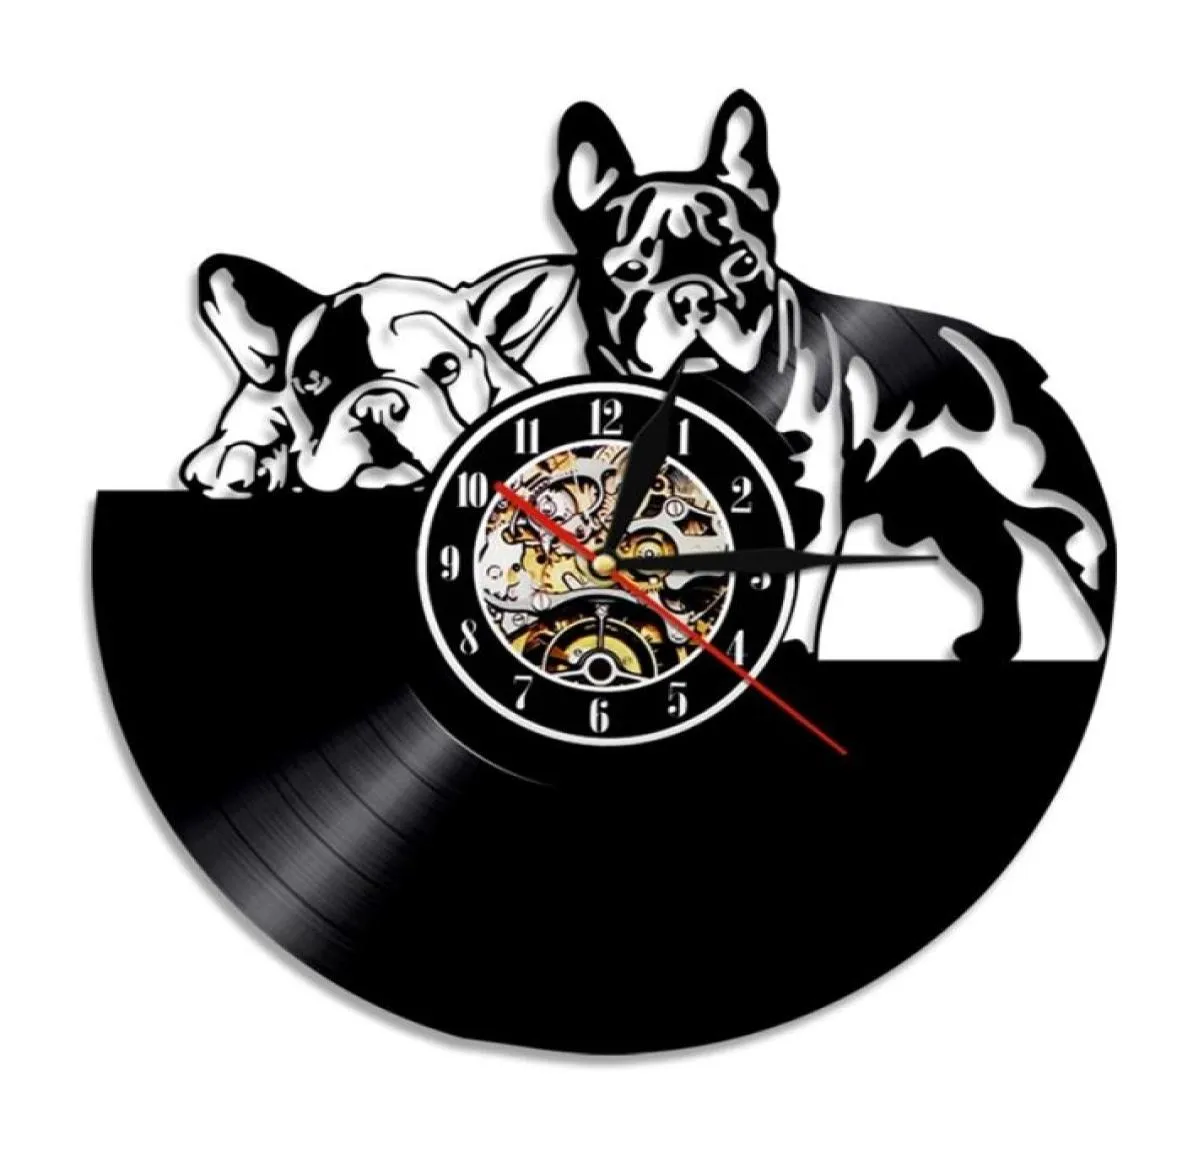 French Bulldog Record Wall Clock Modern Design Animal Pet Shop Decor Puppy Wall Clock Relogio De Parede Bulldog Lover Gift 2012026368163